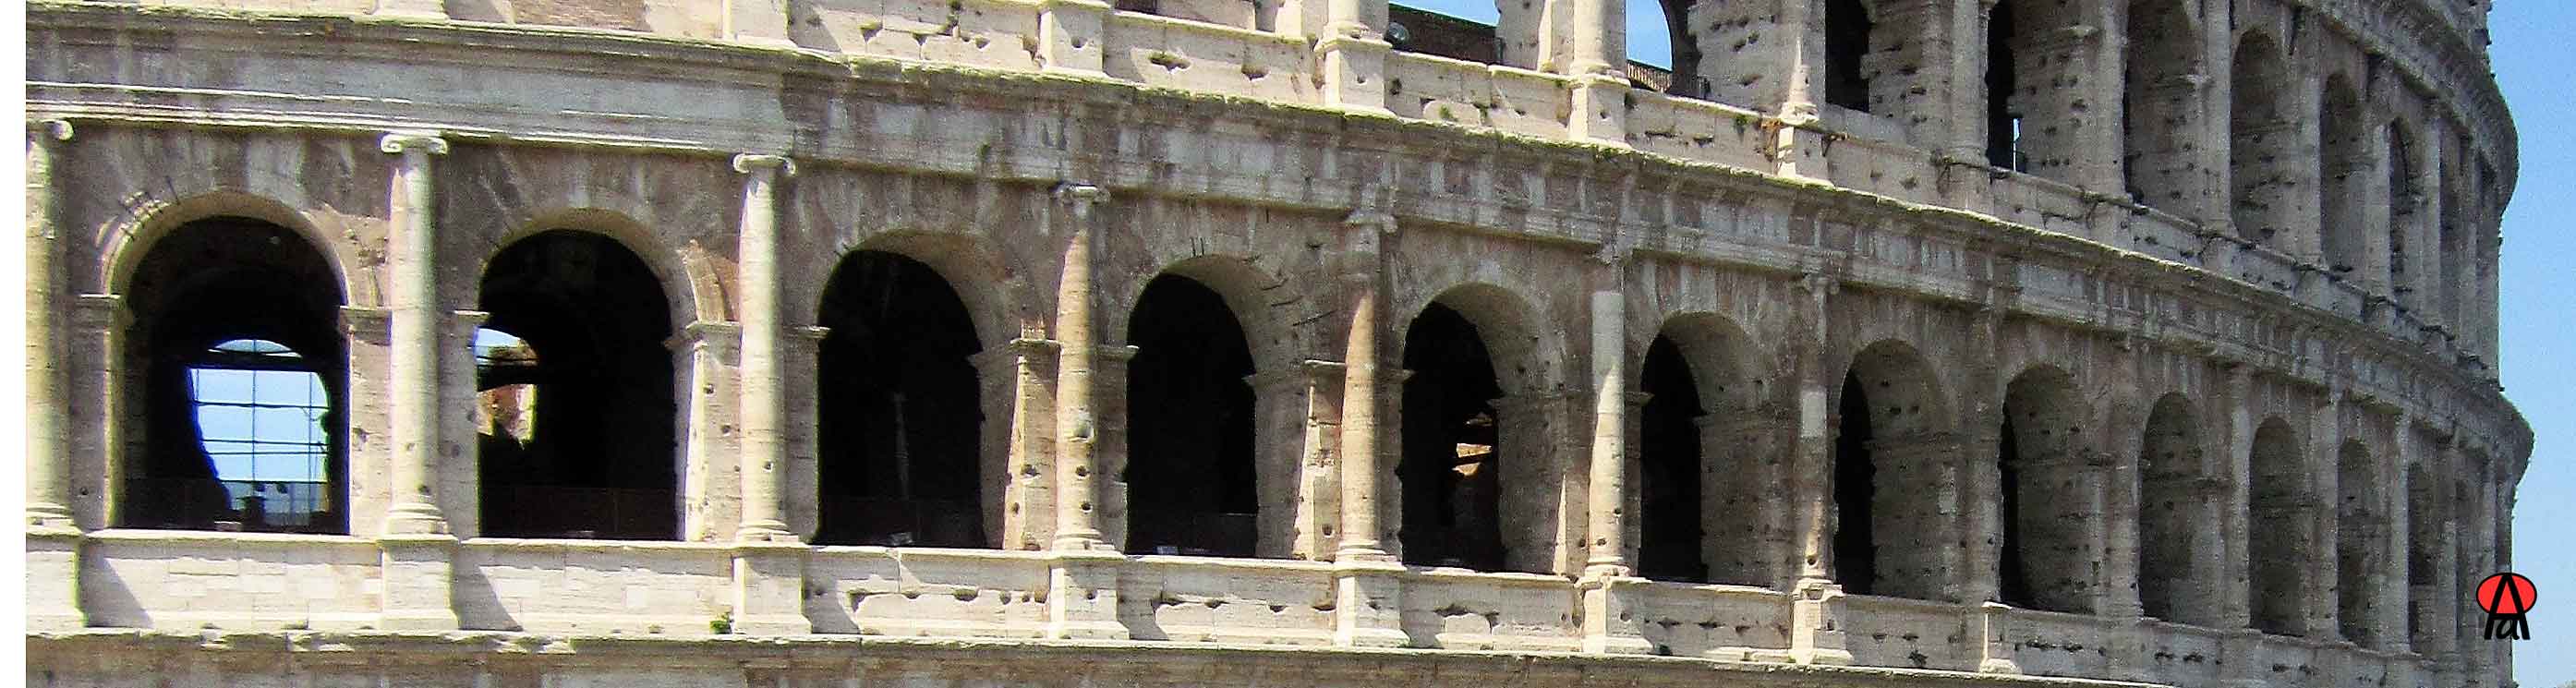 Particolare fotografia coronamento delle arcate del Colosseo a Roma